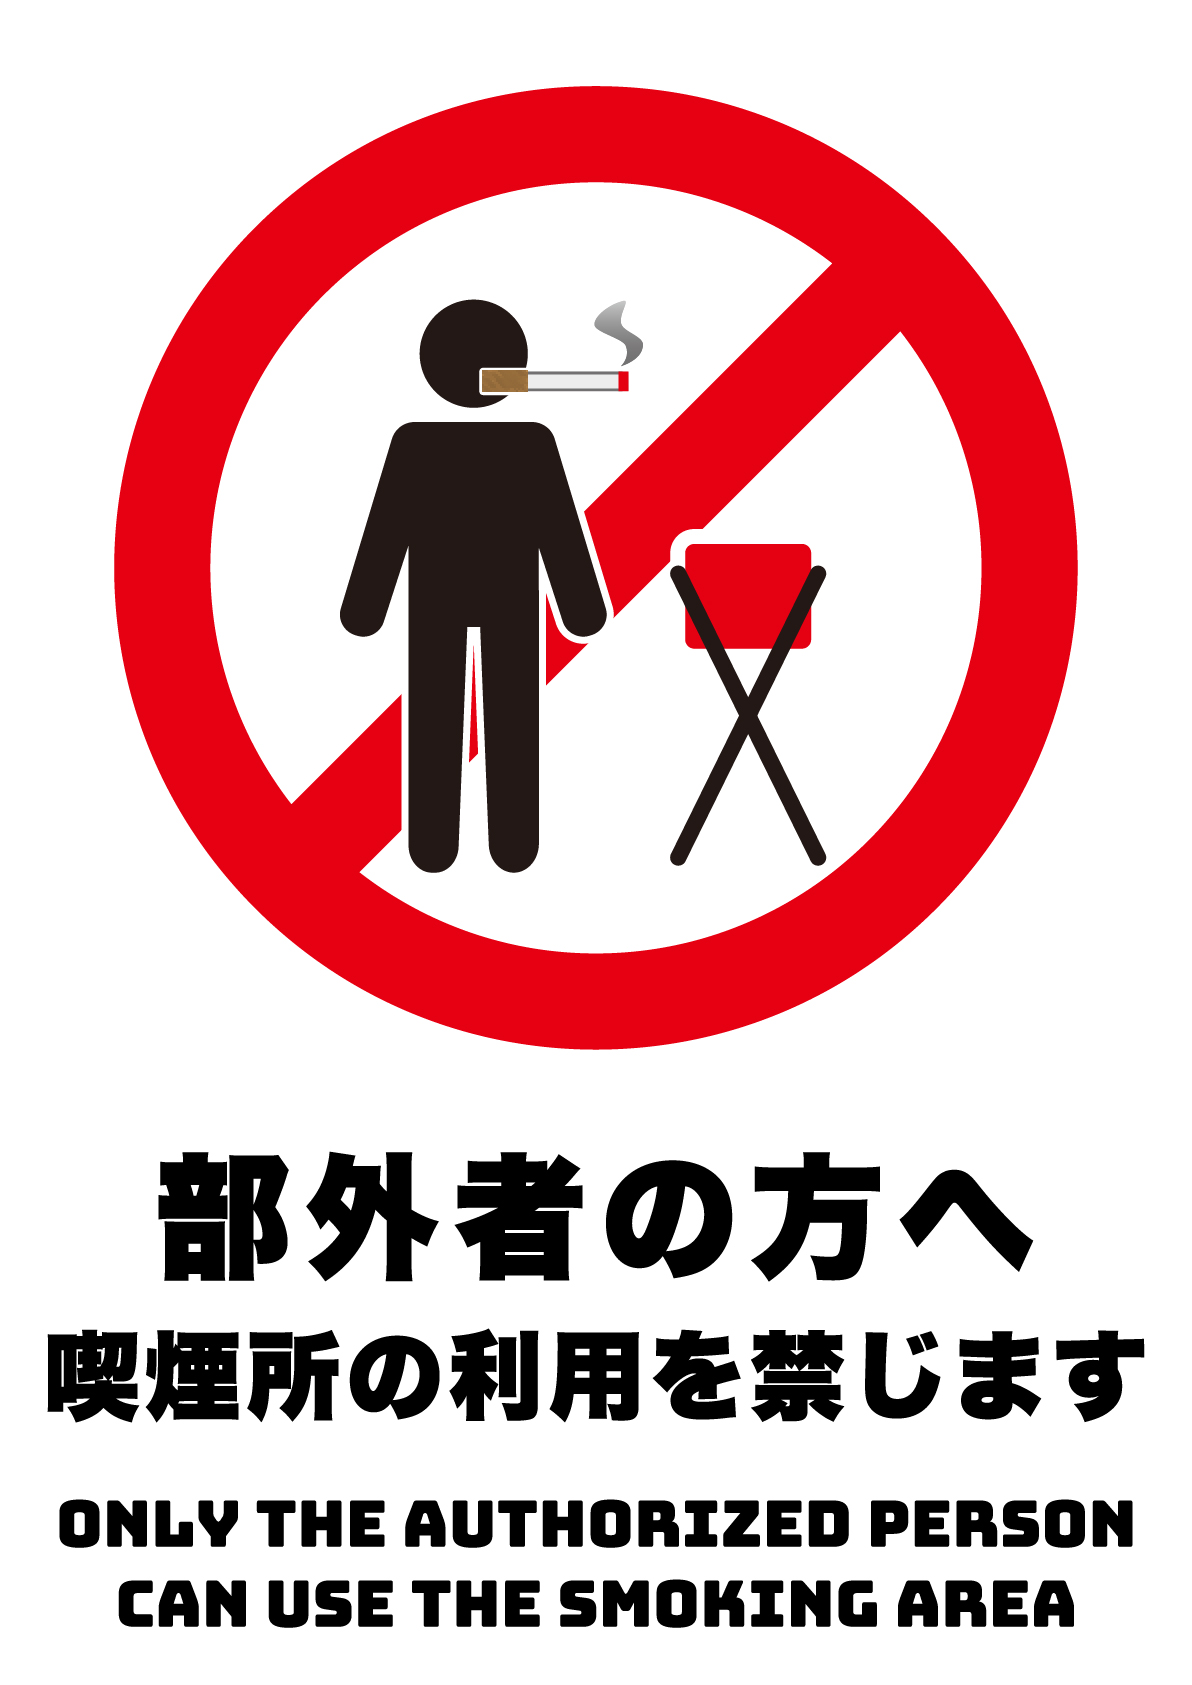 部外者の方の喫煙所の利用を禁じますの張り紙